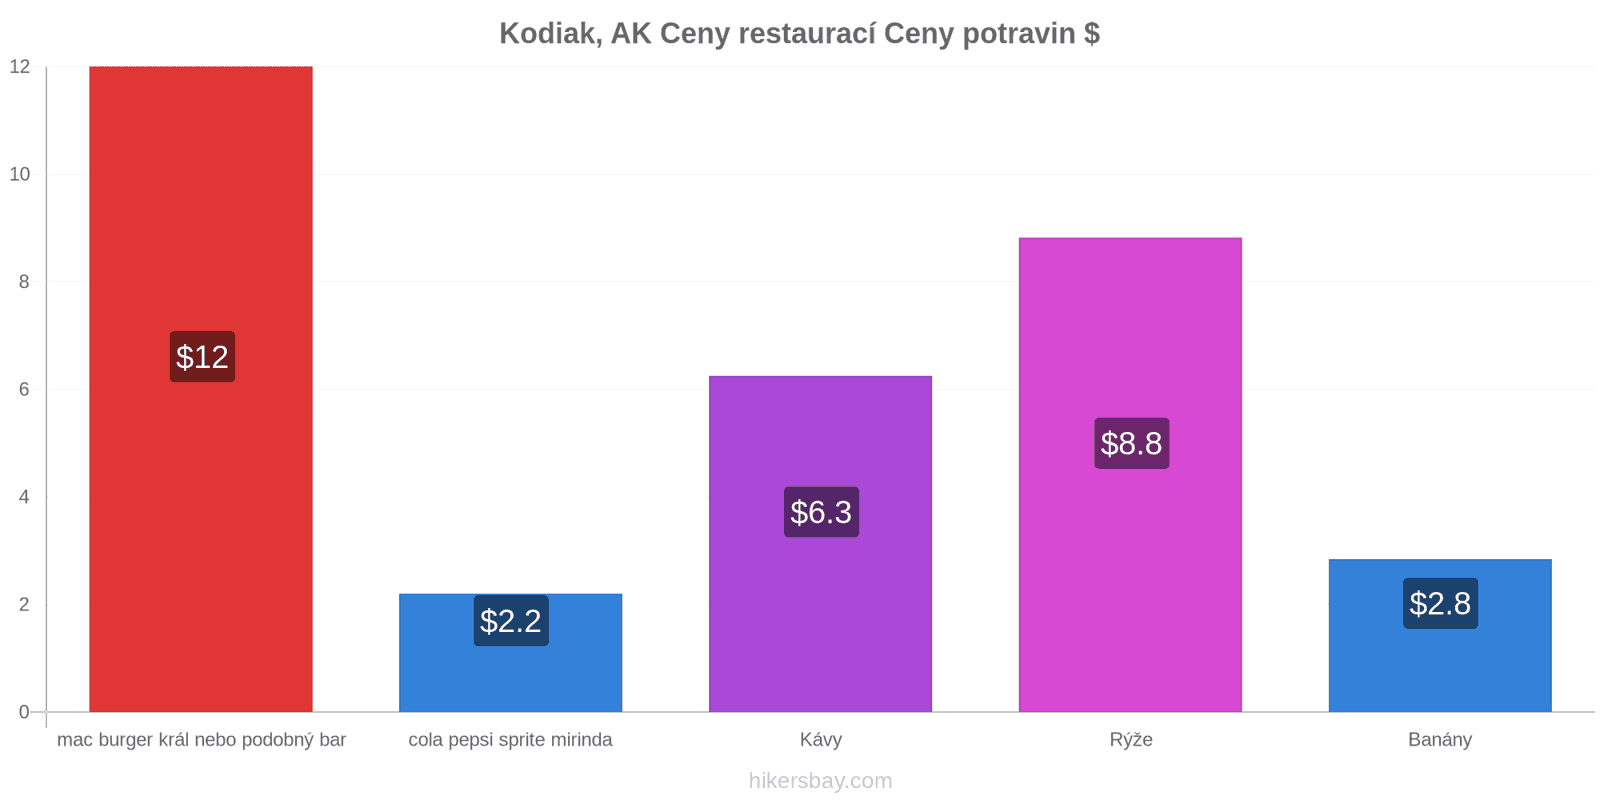 Kodiak, AK změny cen hikersbay.com